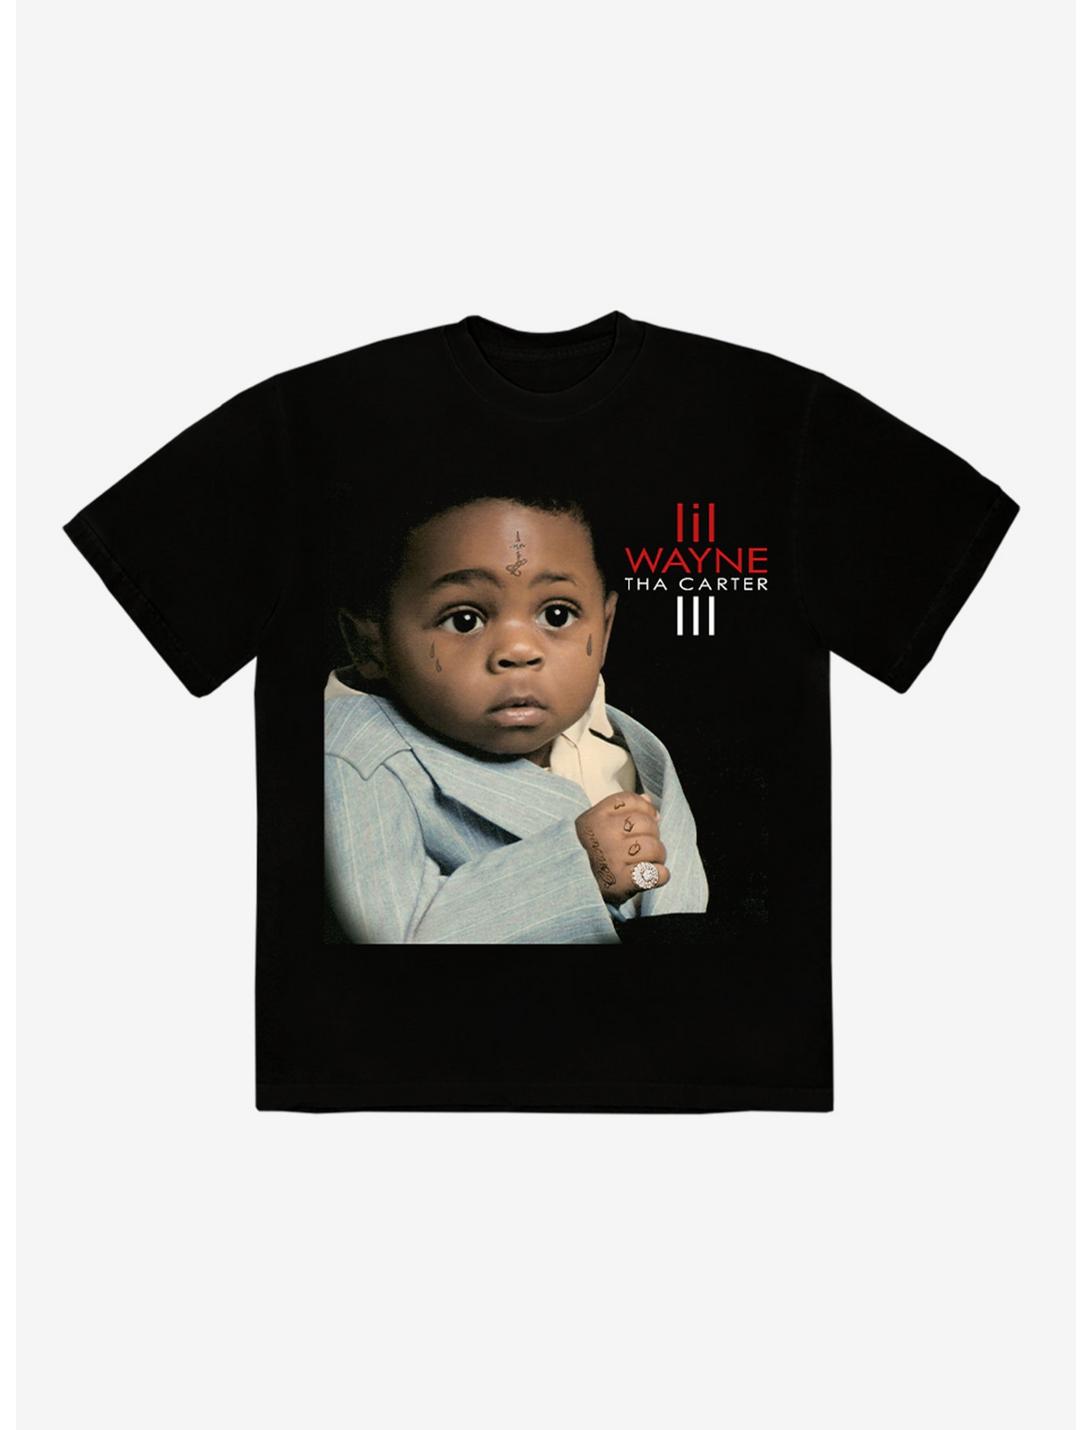 Lil Wayne Tha Carter III Album Cover Portrait T-Shirt, BLACK, hi-res